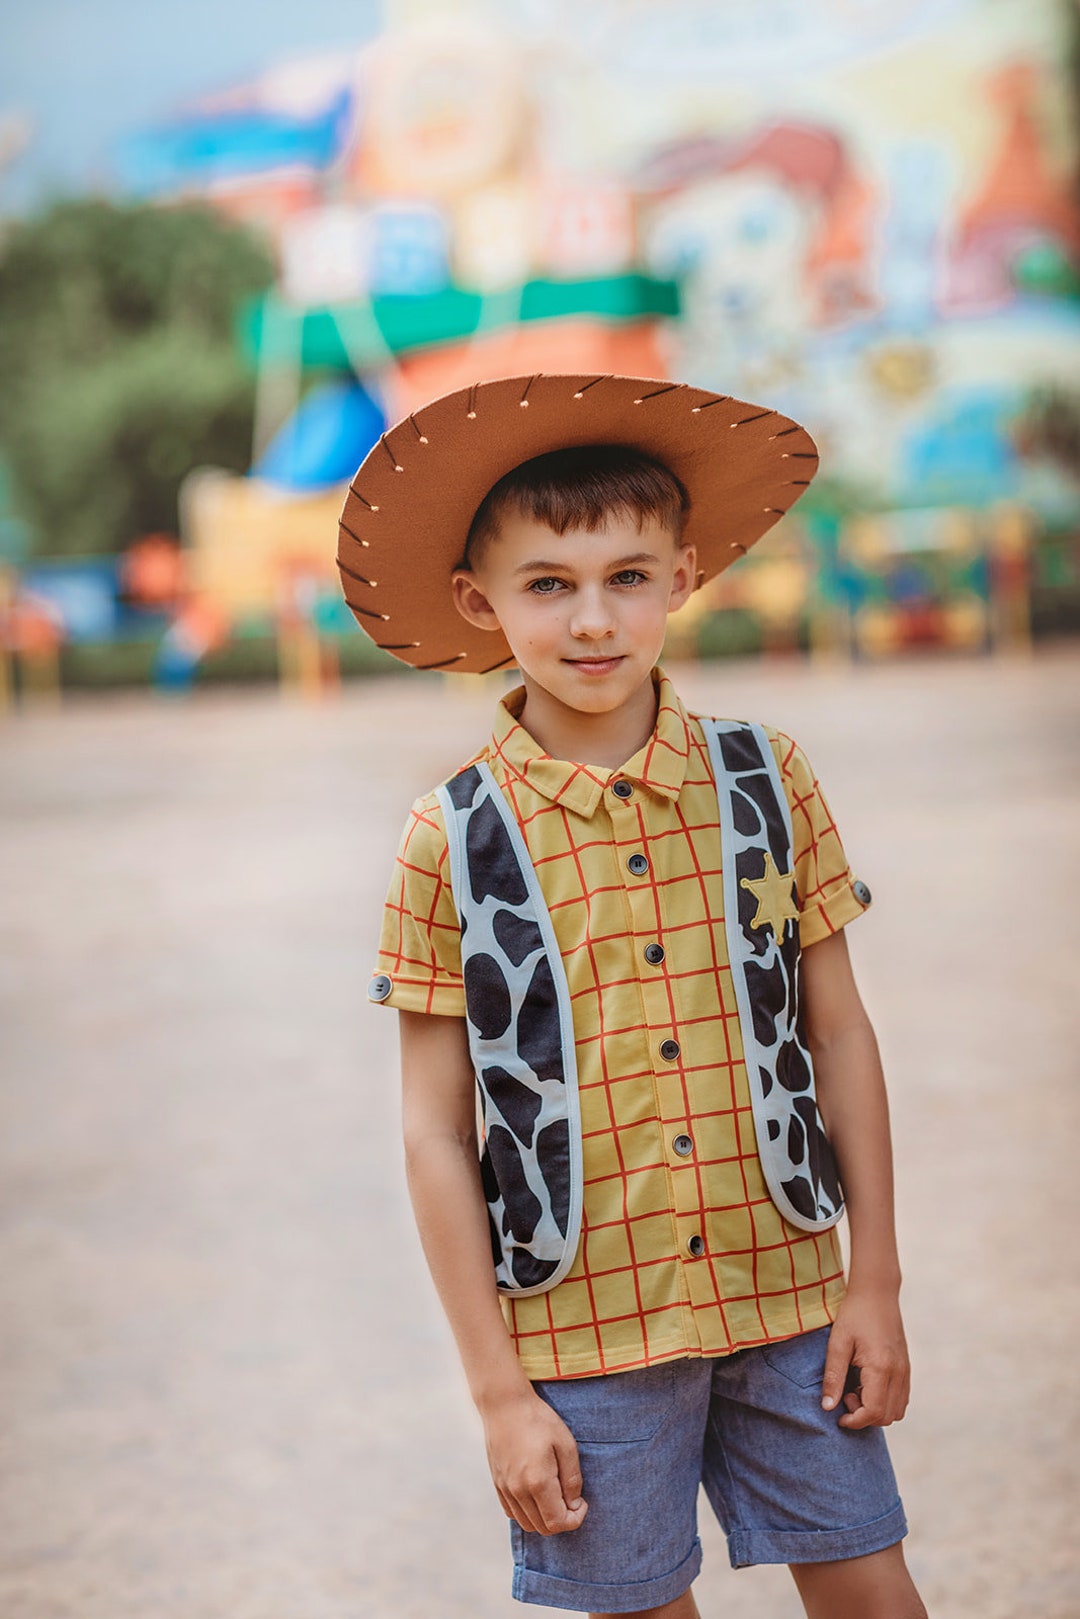 Toy Story Toddler Boys Woody Costume Zip-Up Hoodie Sweatshirt 